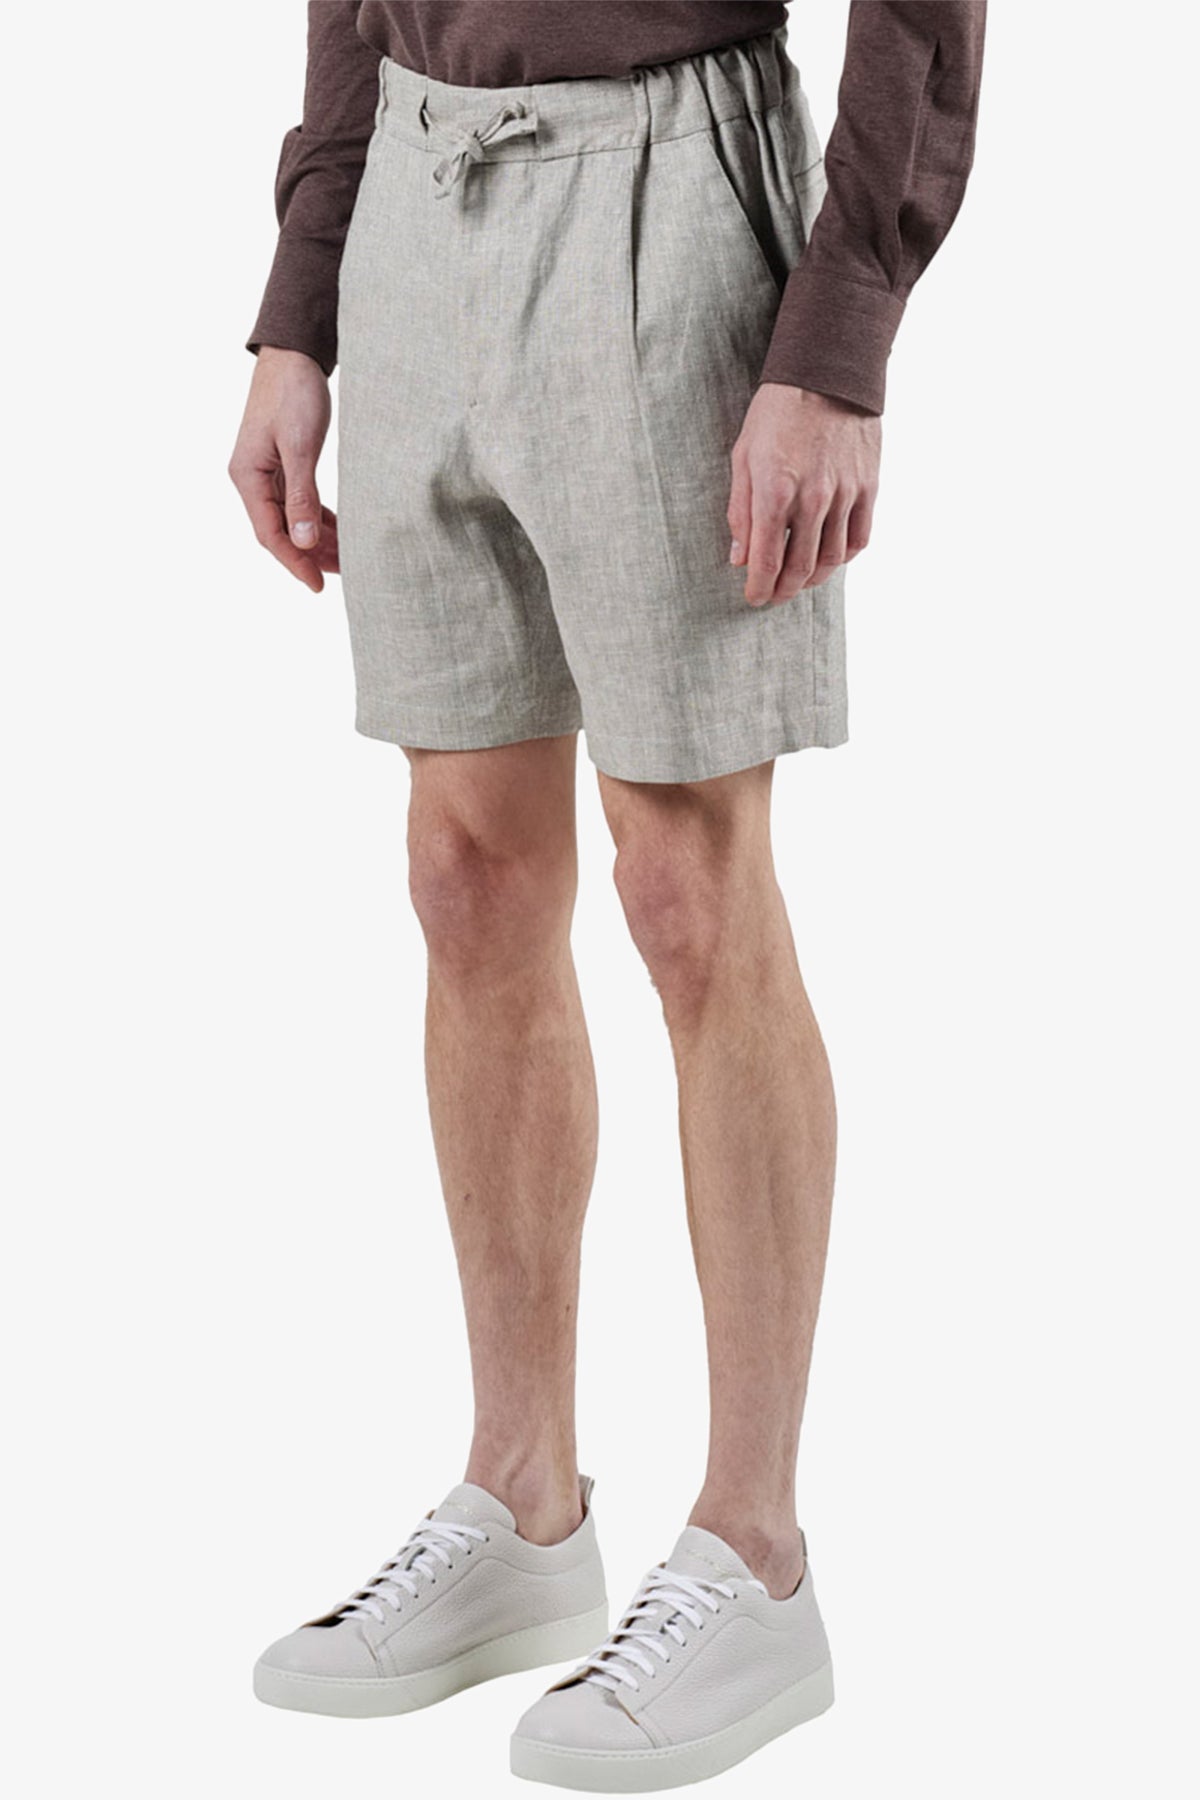 Tagliata  - Oatmeal Shorts